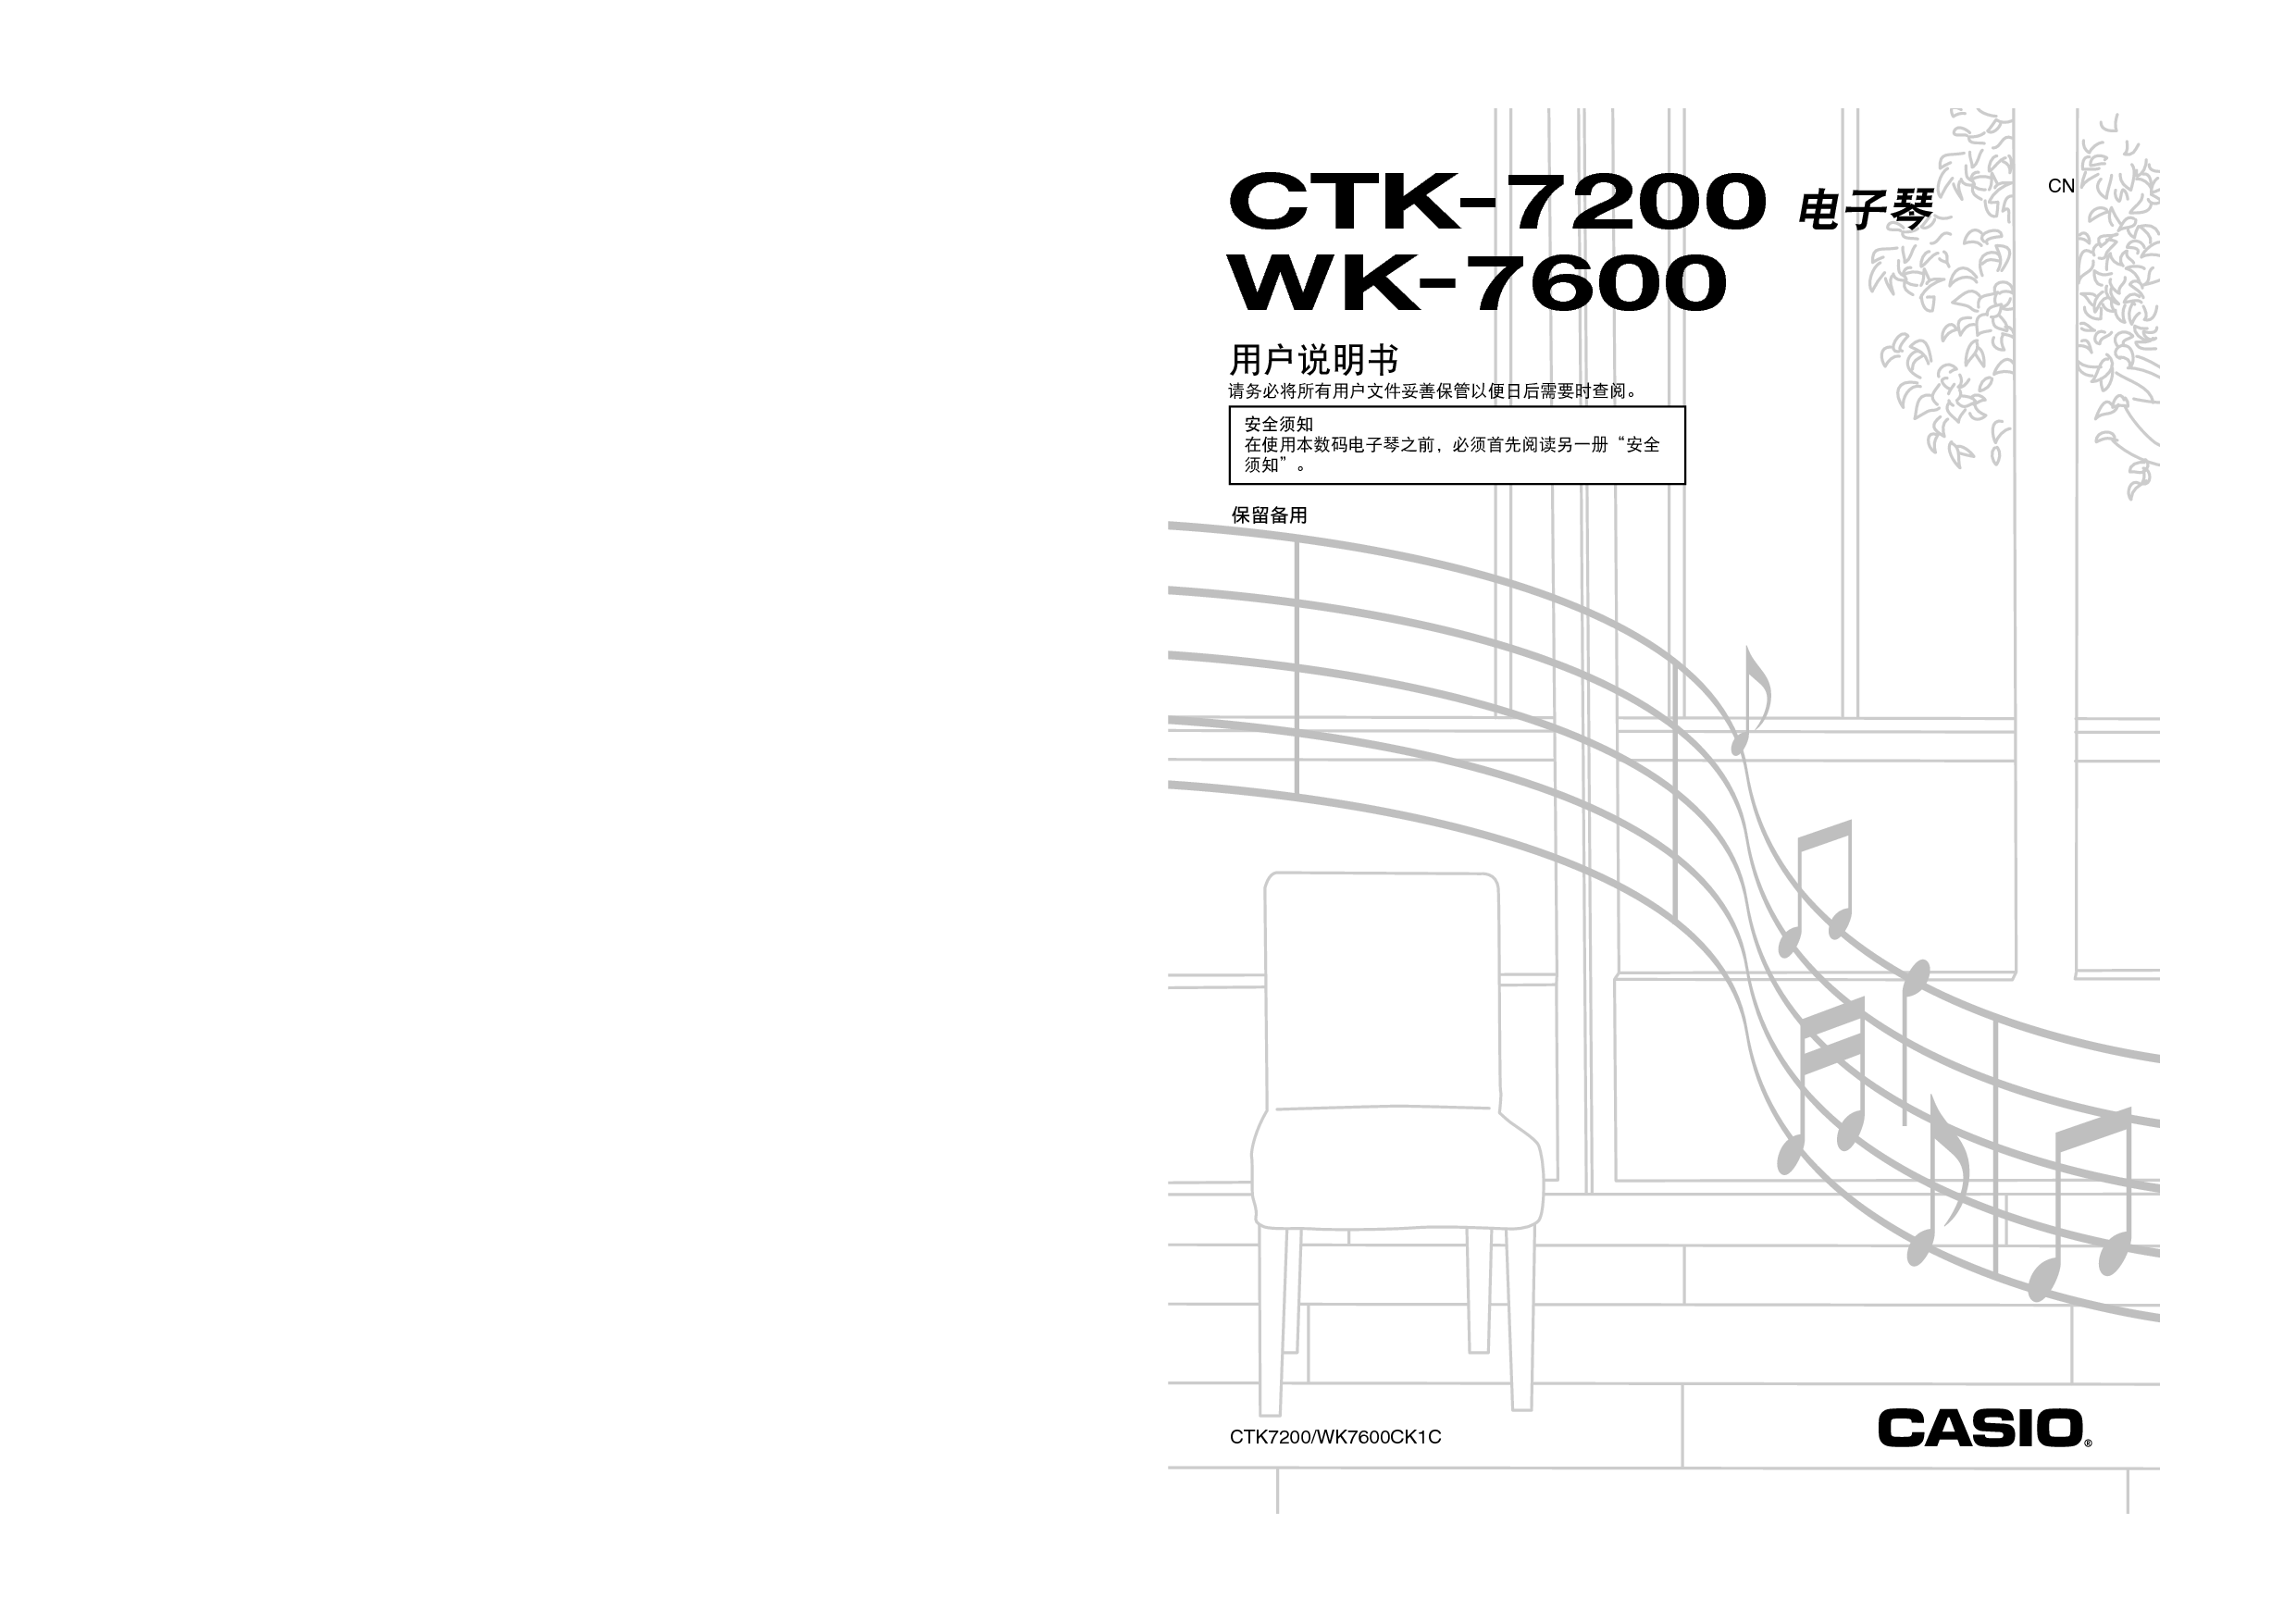 卡西欧 Casio CTK-7200 使用说明书 封面